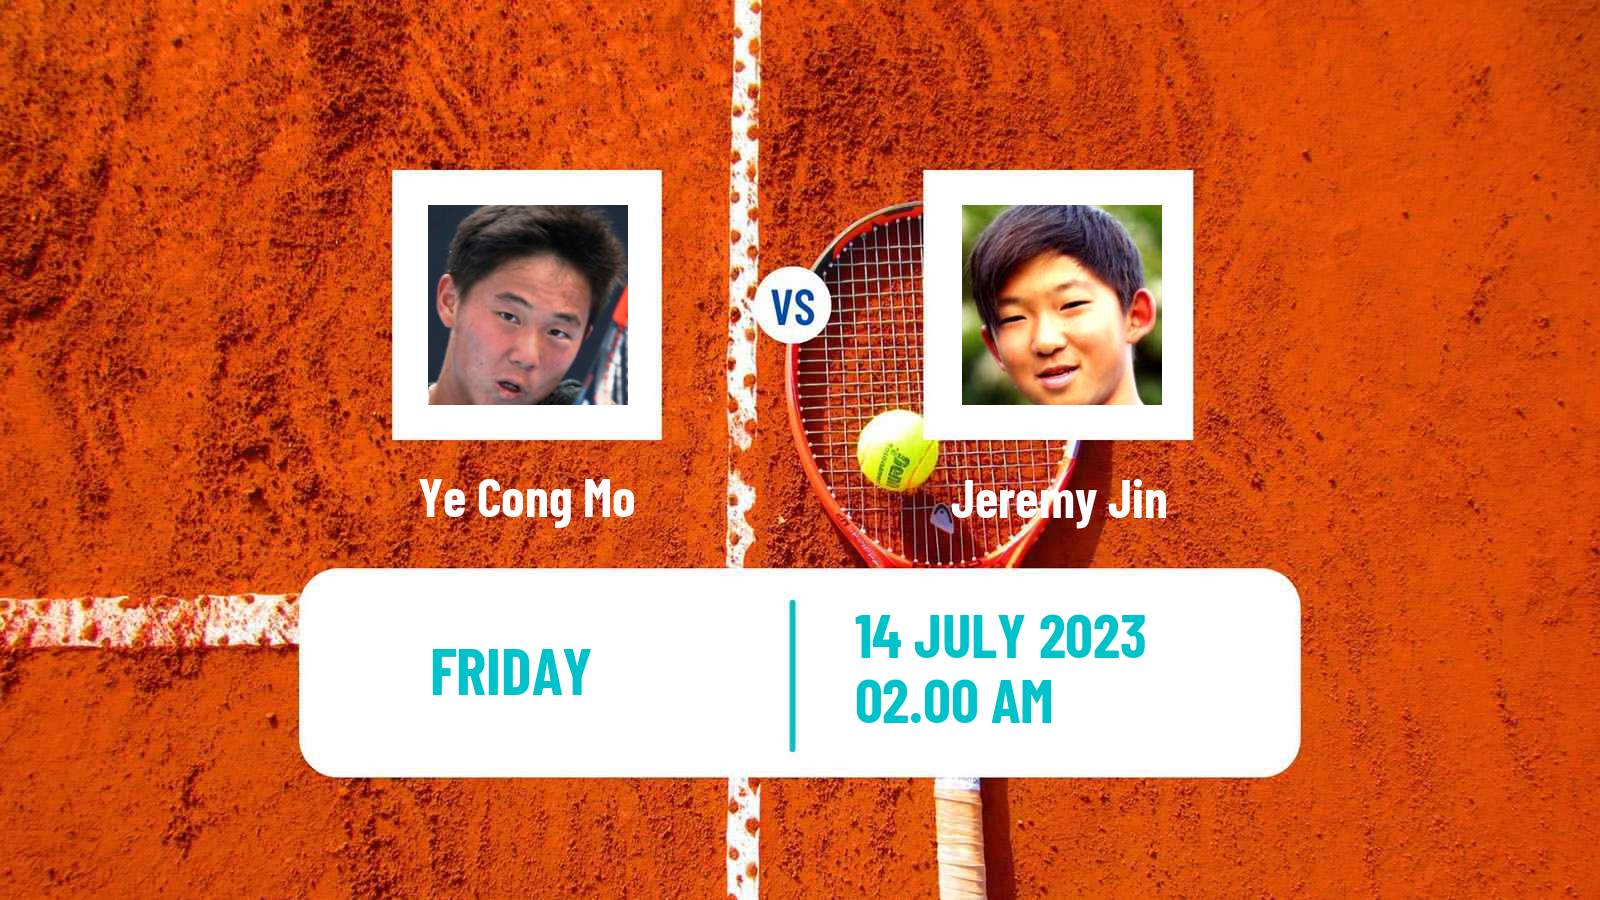 Tennis ITF M15 Shanghai Men Ye Cong Mo - Jeremy Jin